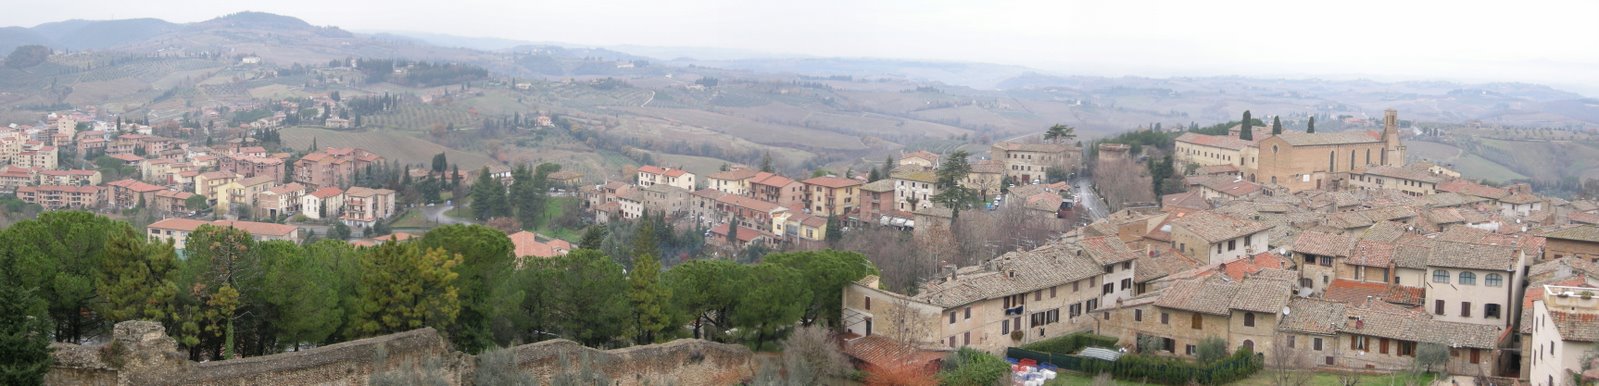 [Panorama_San_Gimignano_2.jpg]